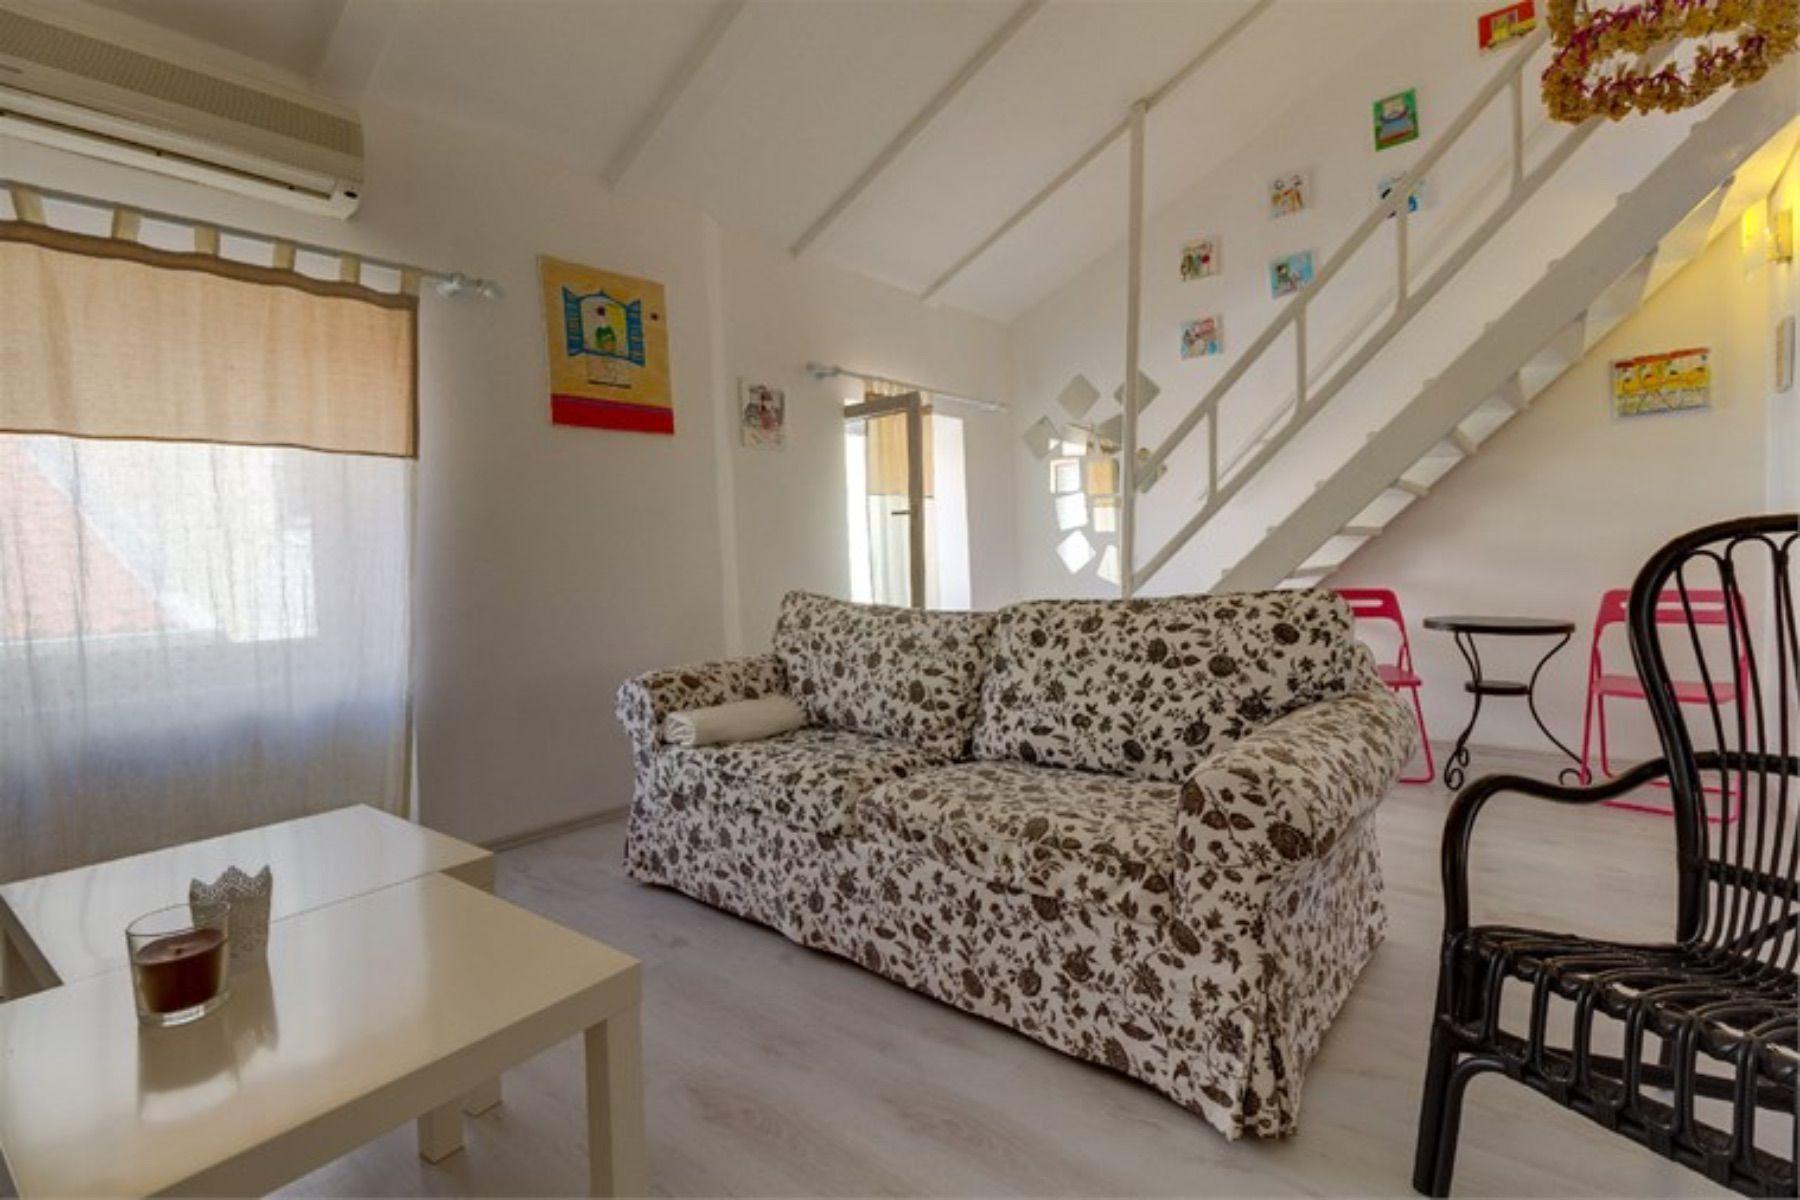 Ferienwohnung für 6 Personen ca. 75 m² i   kroatische Inseln